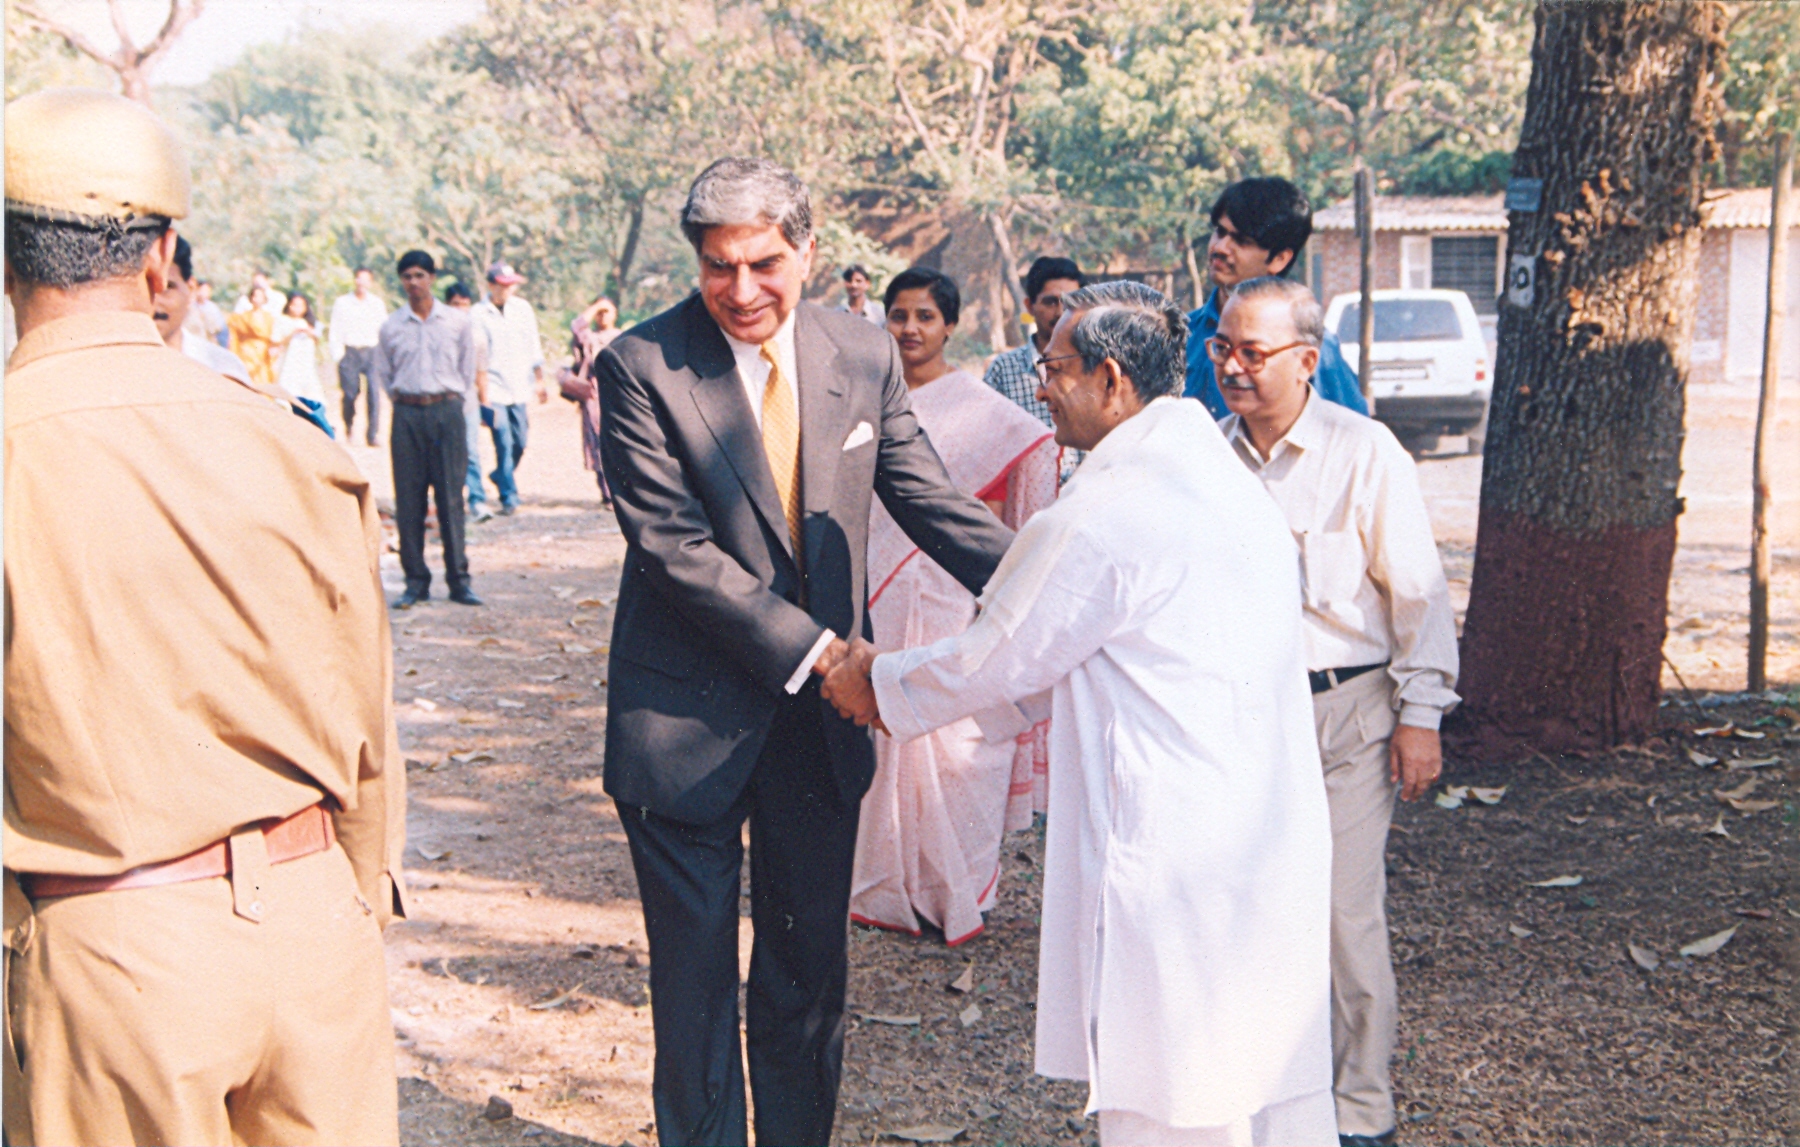 Poster of Ratan Tata's visit.jpg